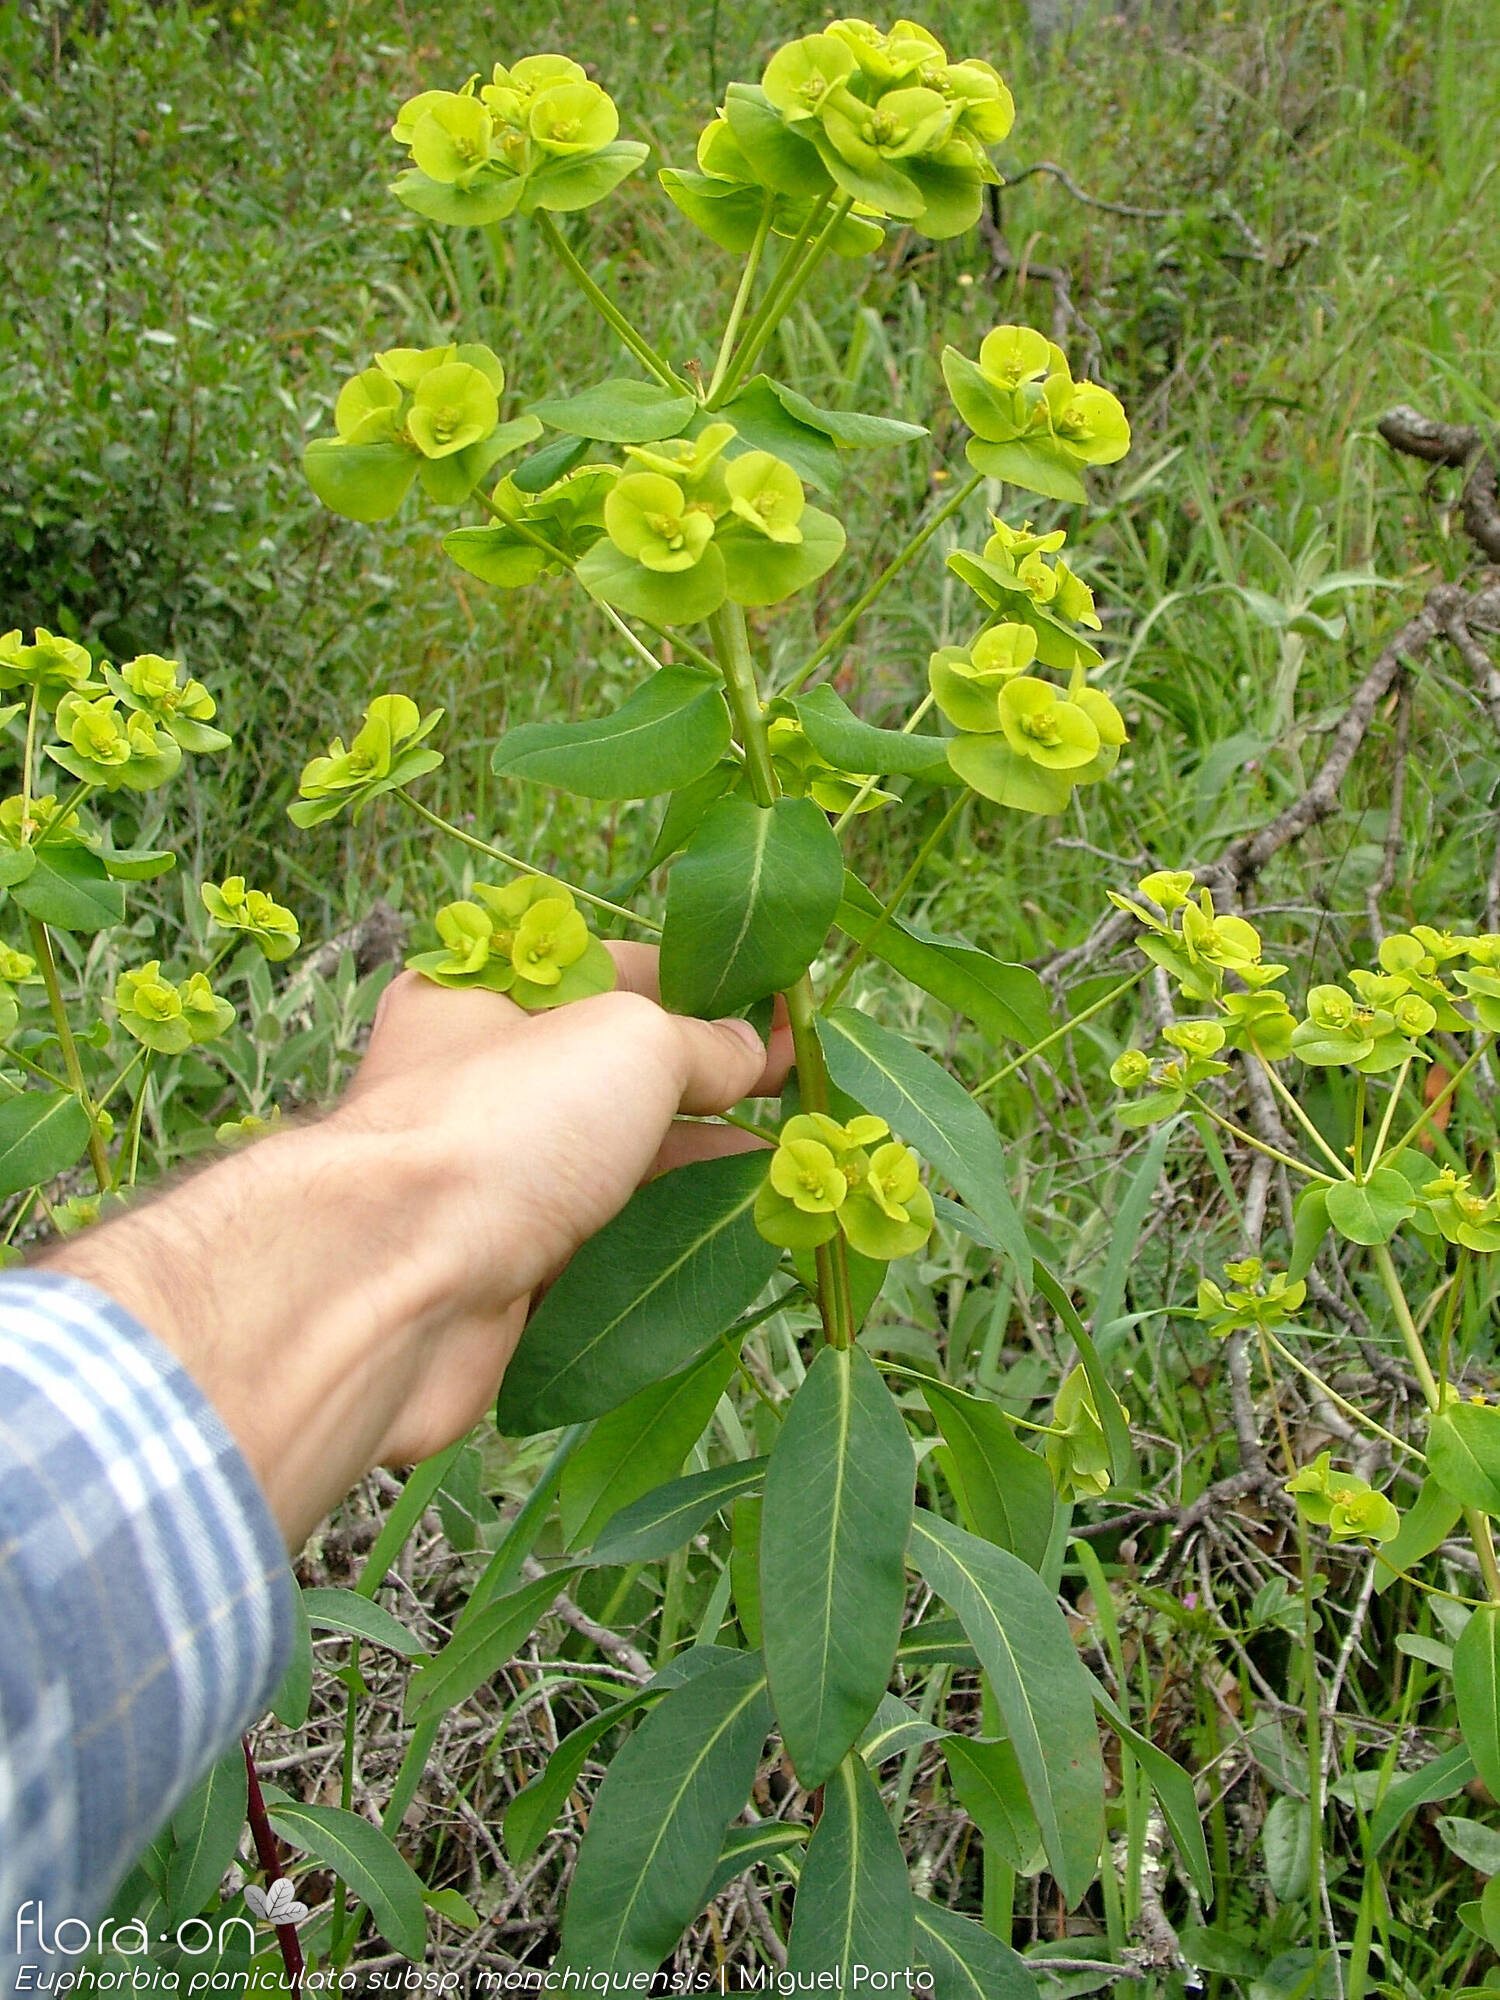 Euphorbia paniculata - Flor (geral) | Miguel Porto; CC BY-NC 4.0